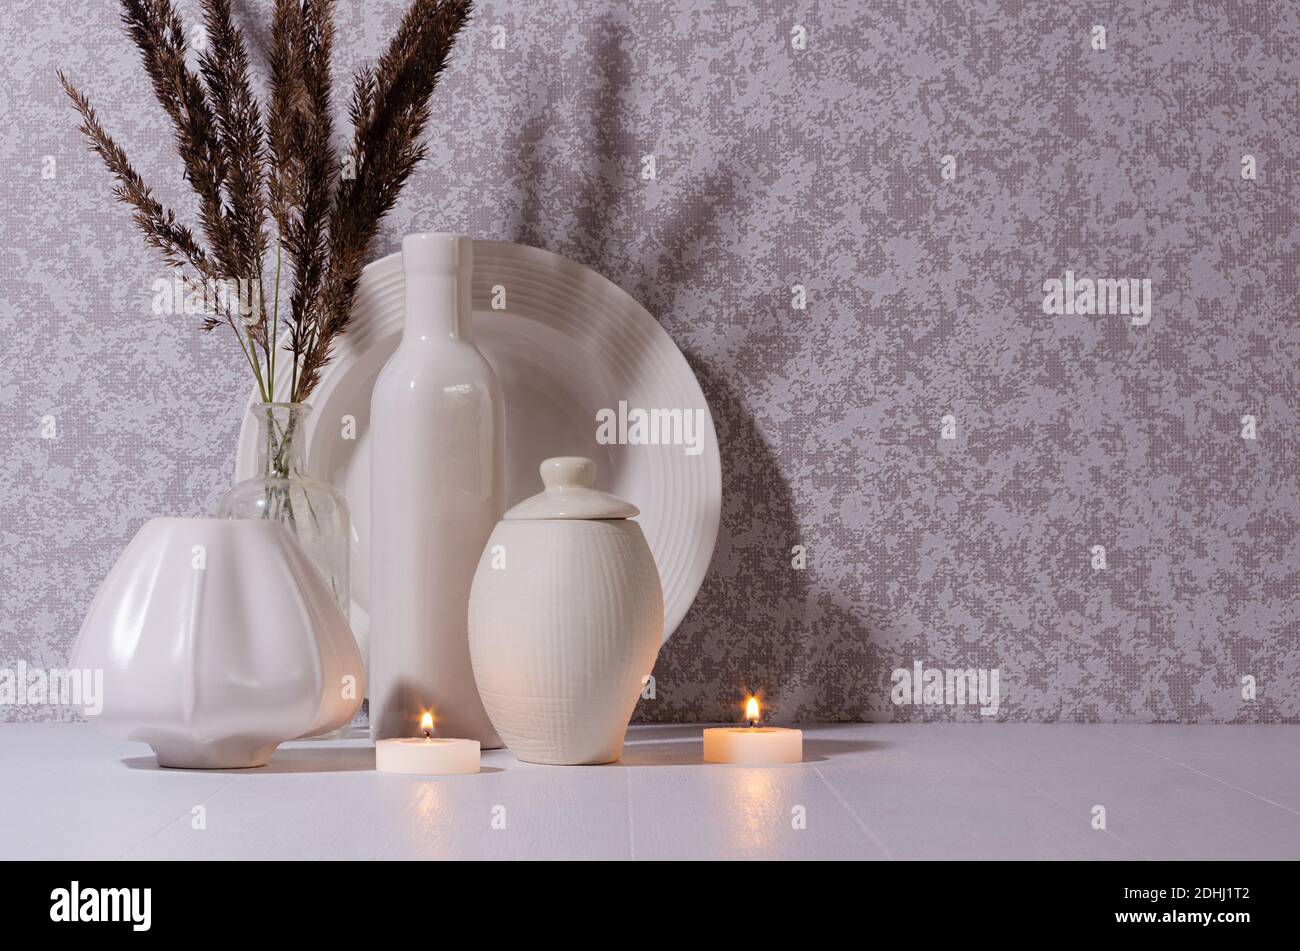 Elegante decorazione a casa di hygge in serata con candele brucianti, bottiglie di ceramica bianca, ciotola, piatto e bouquet di piante secche su tavola di legno bianco in moonligo Foto Stock